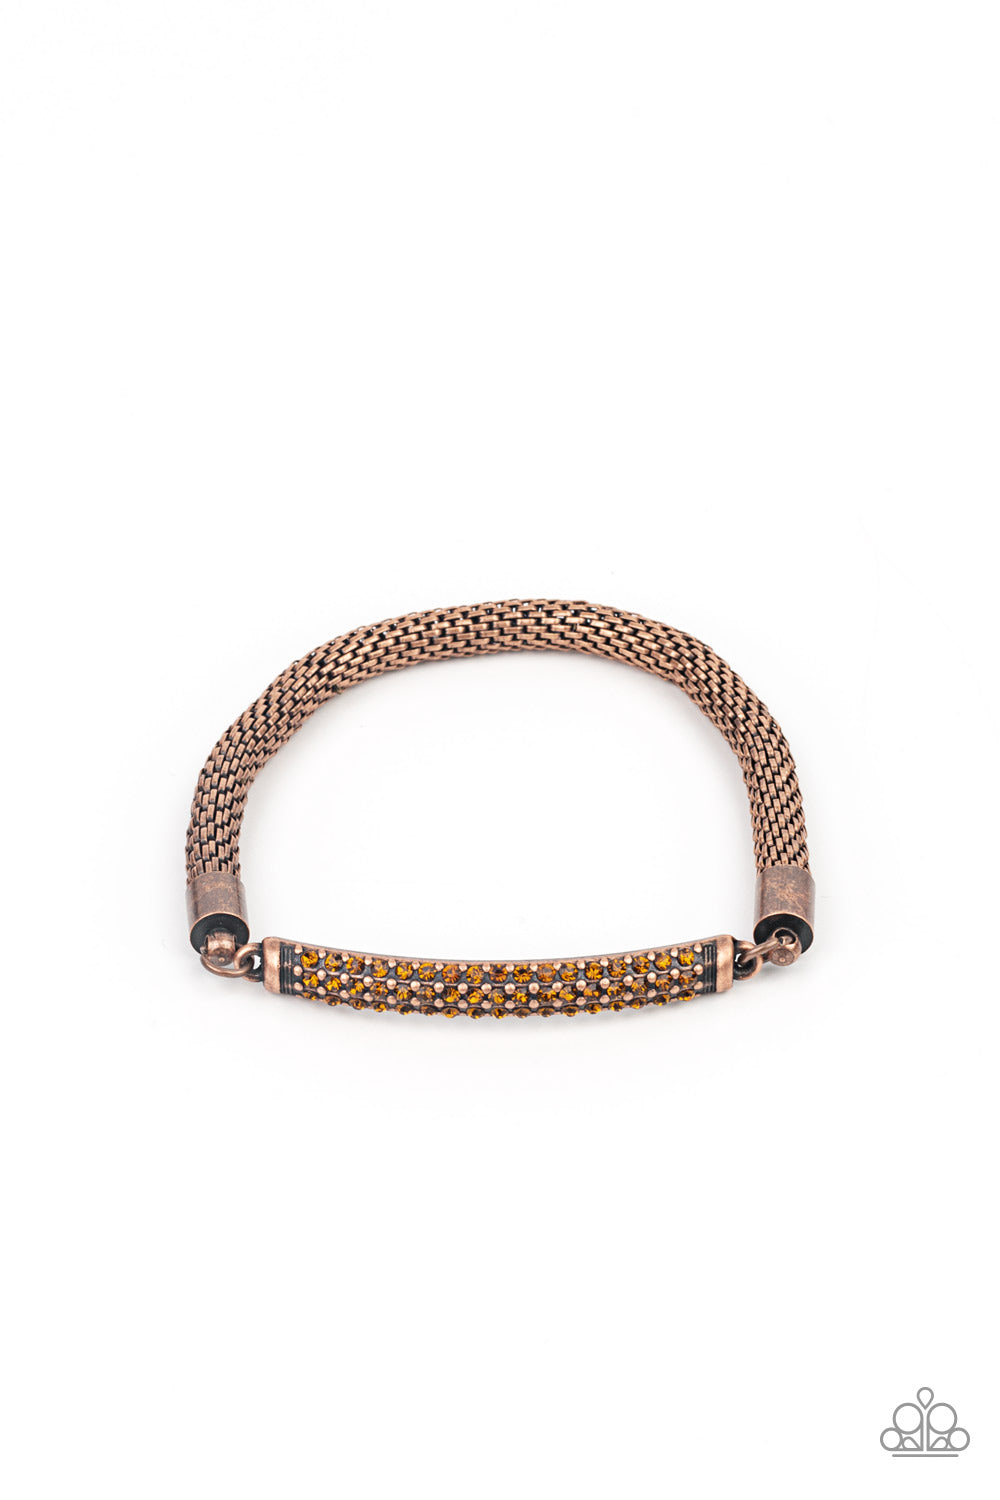 Fearlessly Unfiltered - Copper bracelet 966